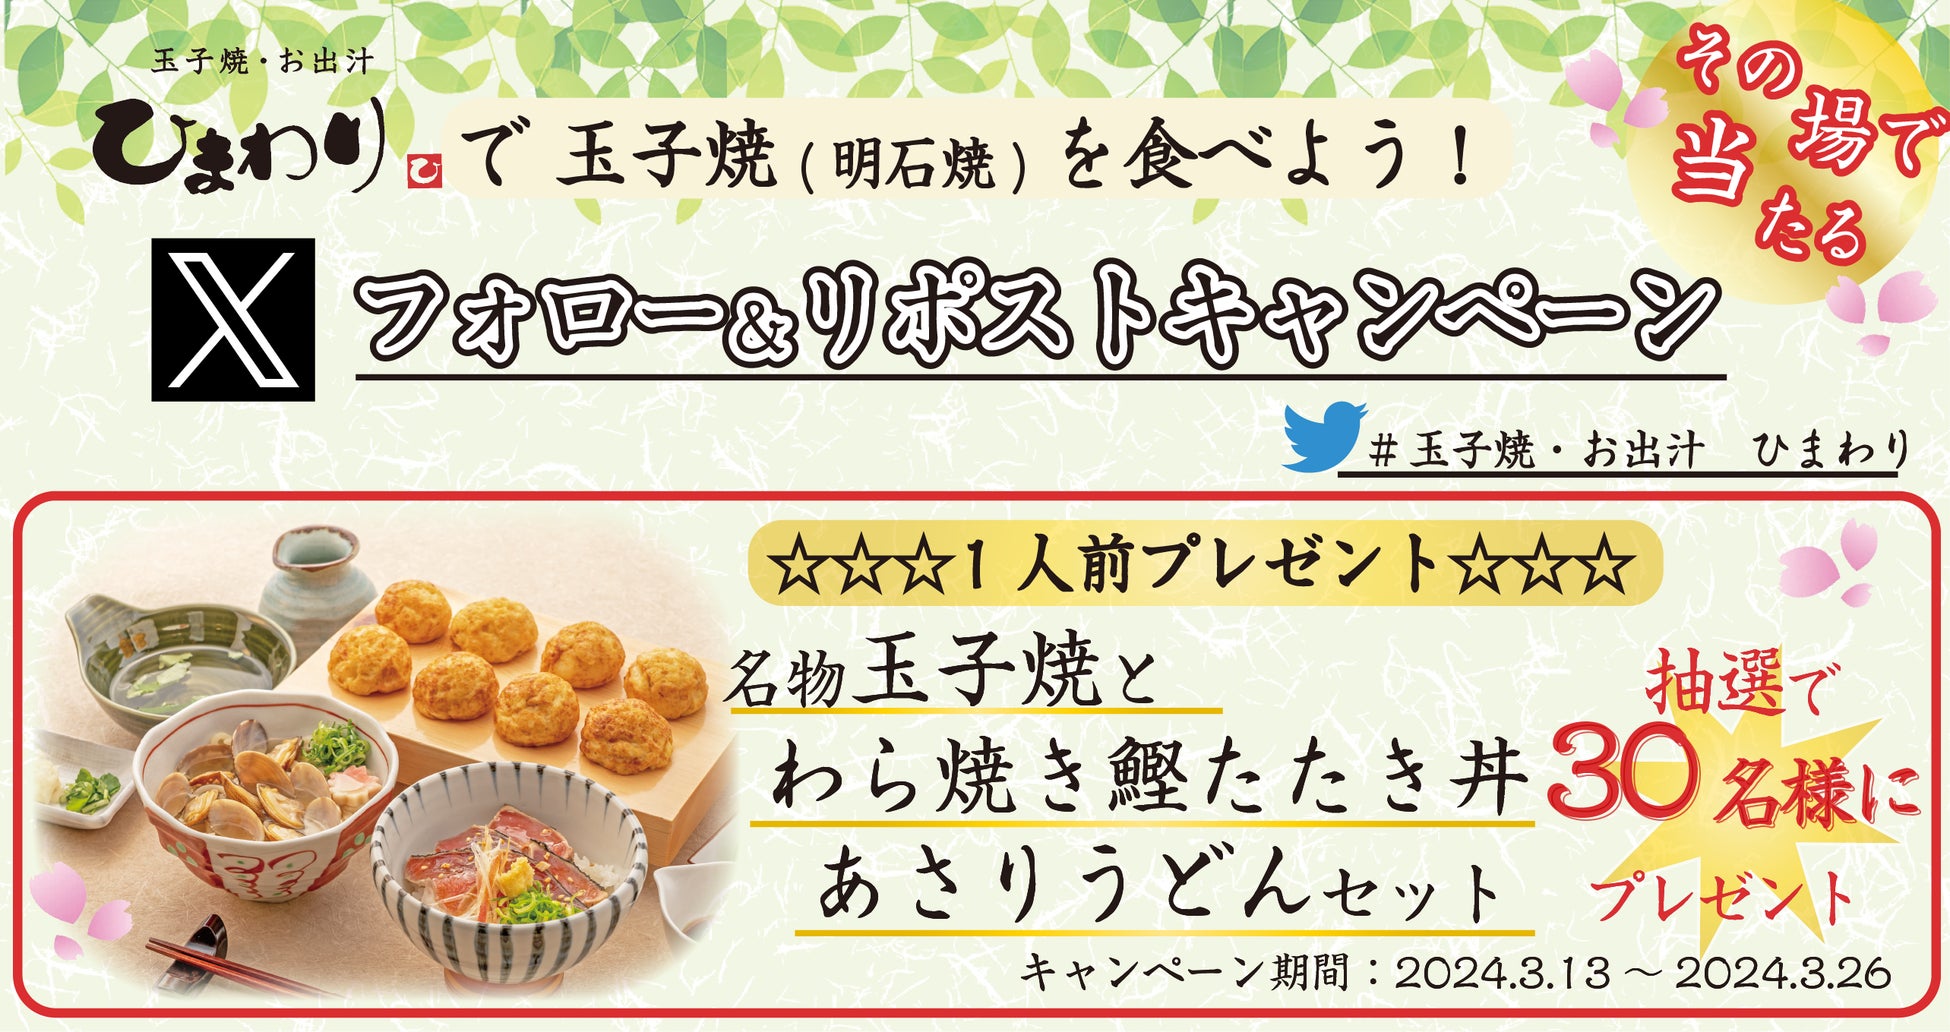 【新感覚の和菓子】氷と餡と餅の専門店「をちみづ」が愛知県日進エリアにオープン。